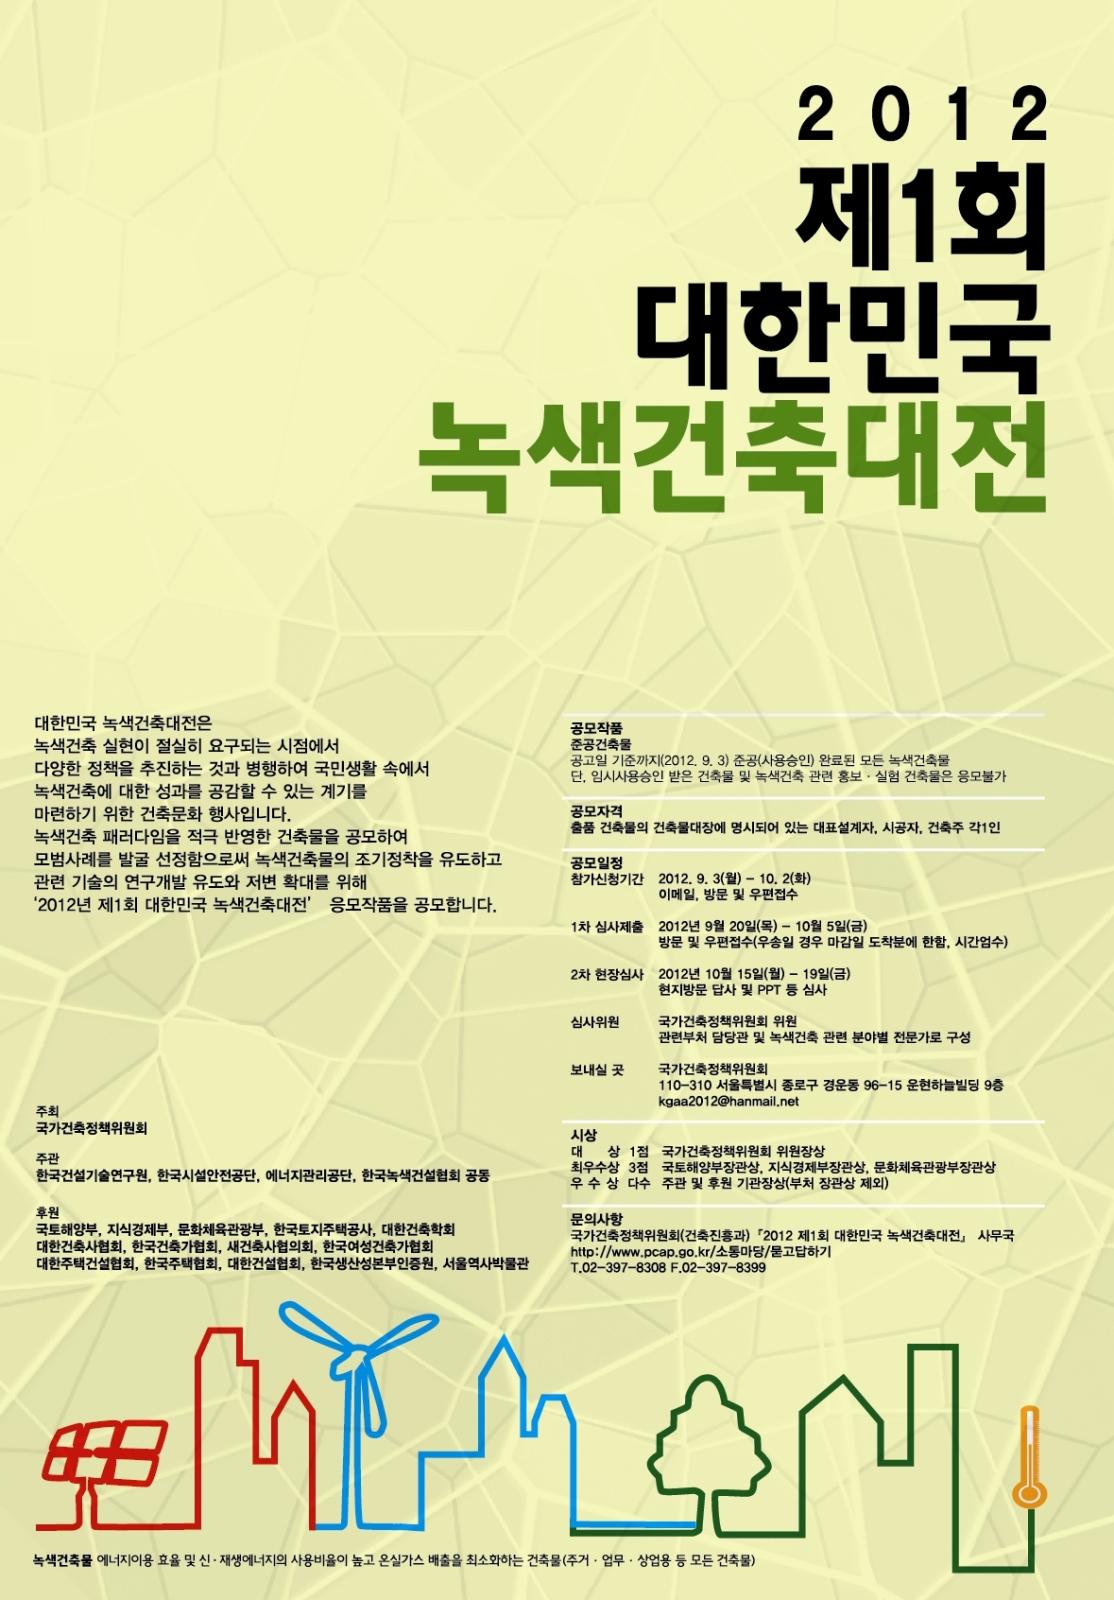 2012 대한민국 녹색건축대전 홍보의 2번째 이미지